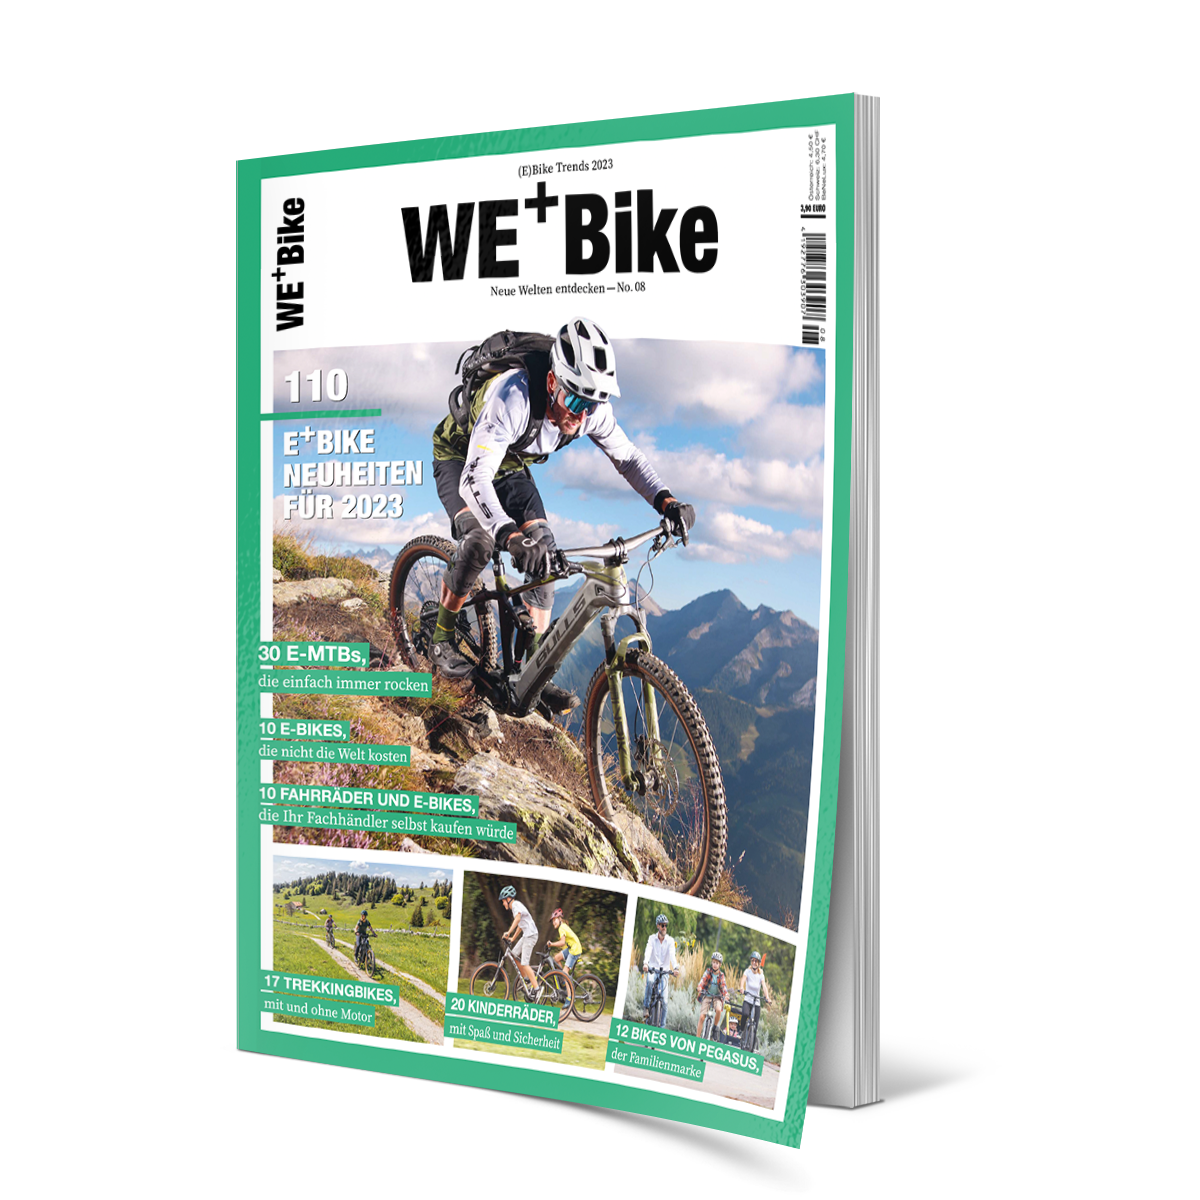 We+Bike, ZEG, Zweiplus Medienagentur